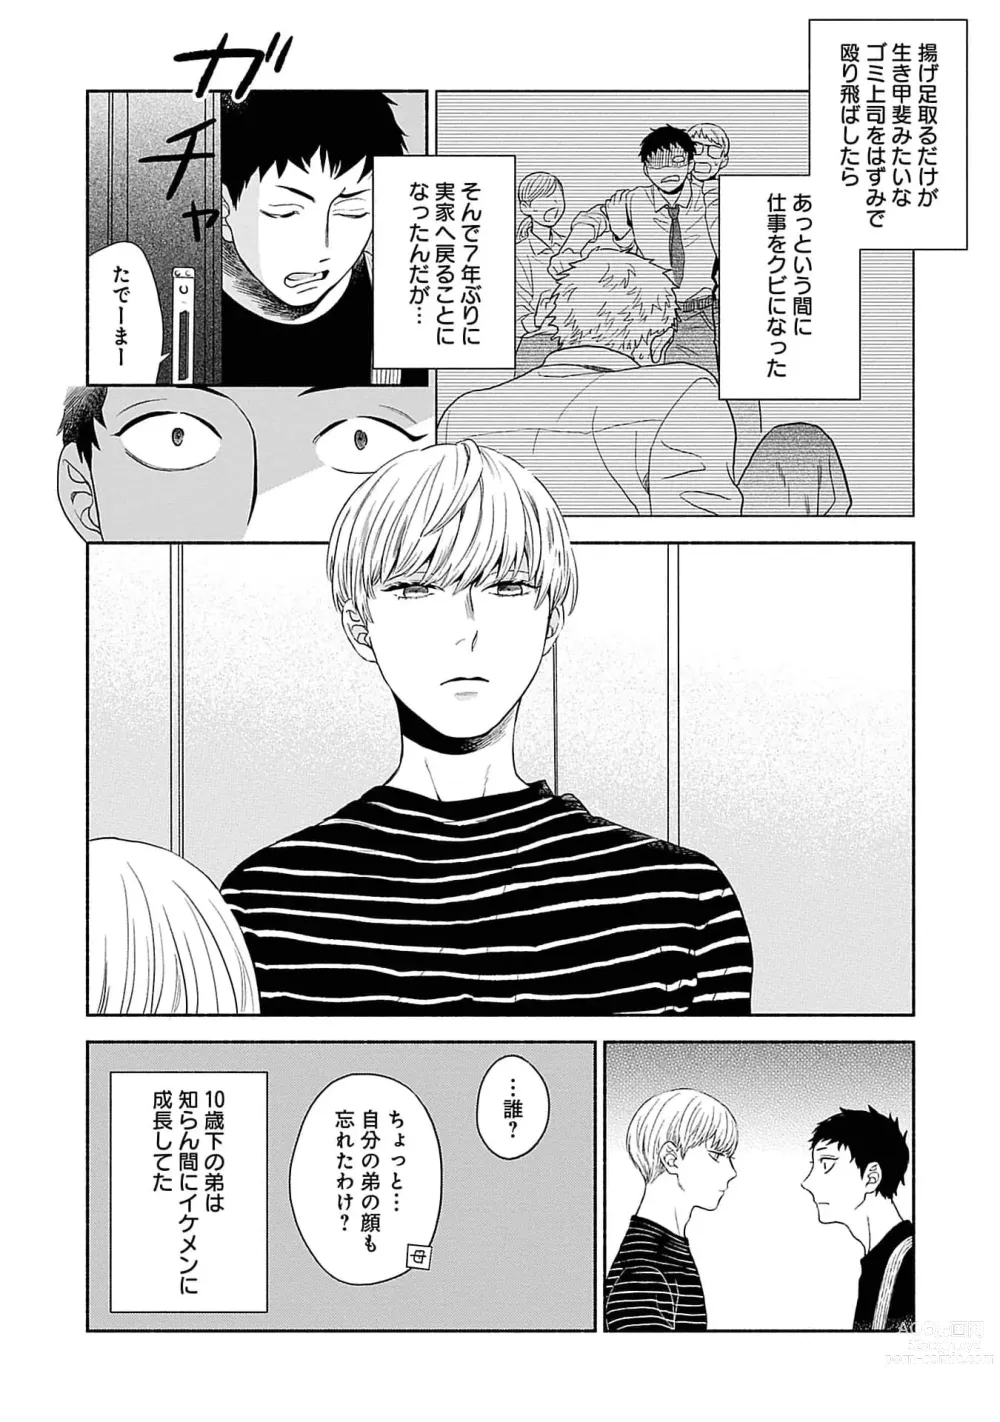 Page 6 of manga Yoru no Kyoudai